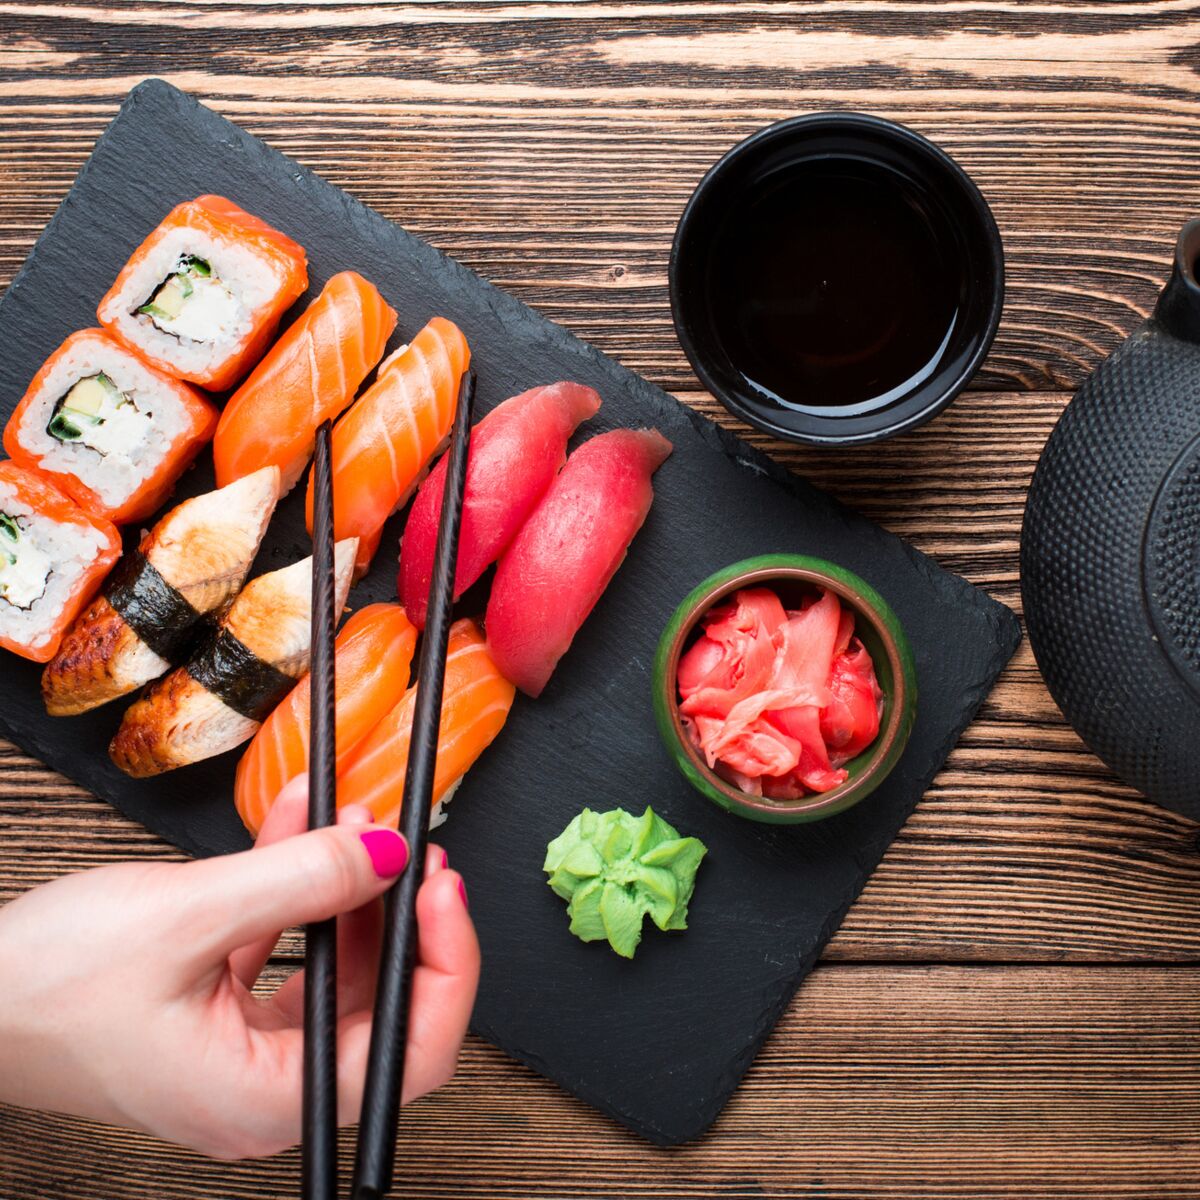 RECETTE // Sushi cake et sushis express au bac à glaçons - Une